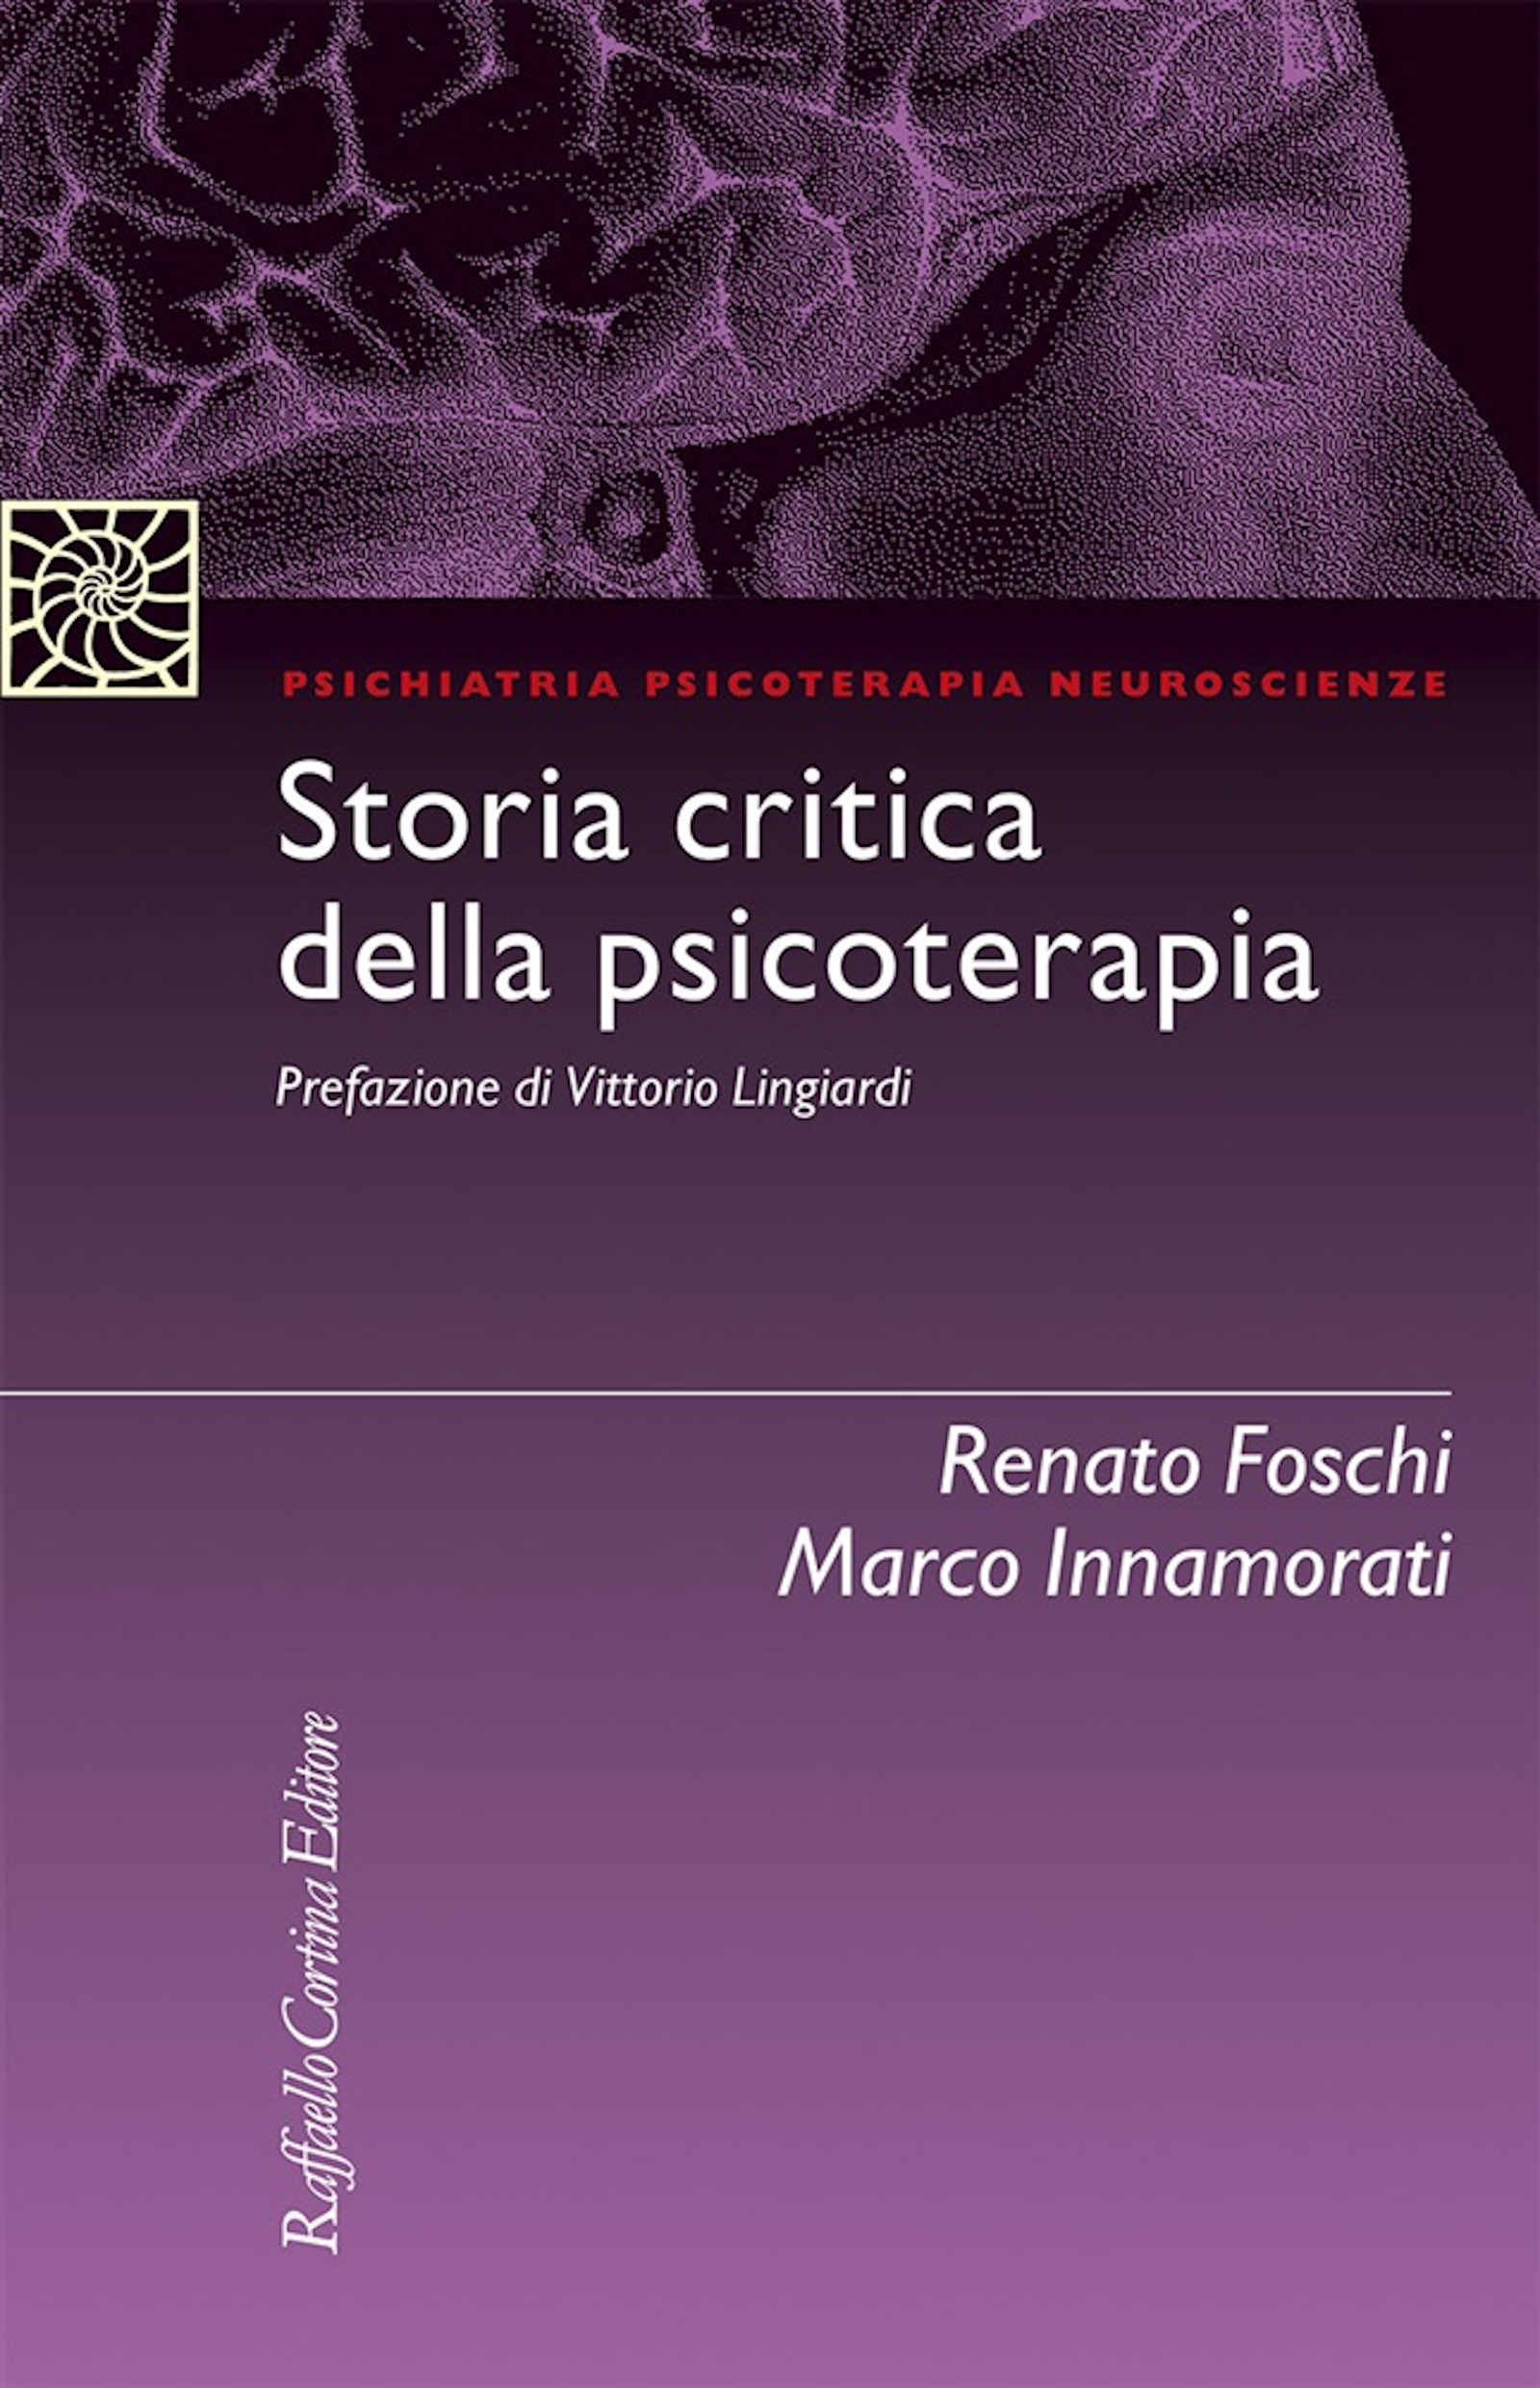 Storia critica della psicoterapia di R Foschi e M Innamorati Recensione Featured